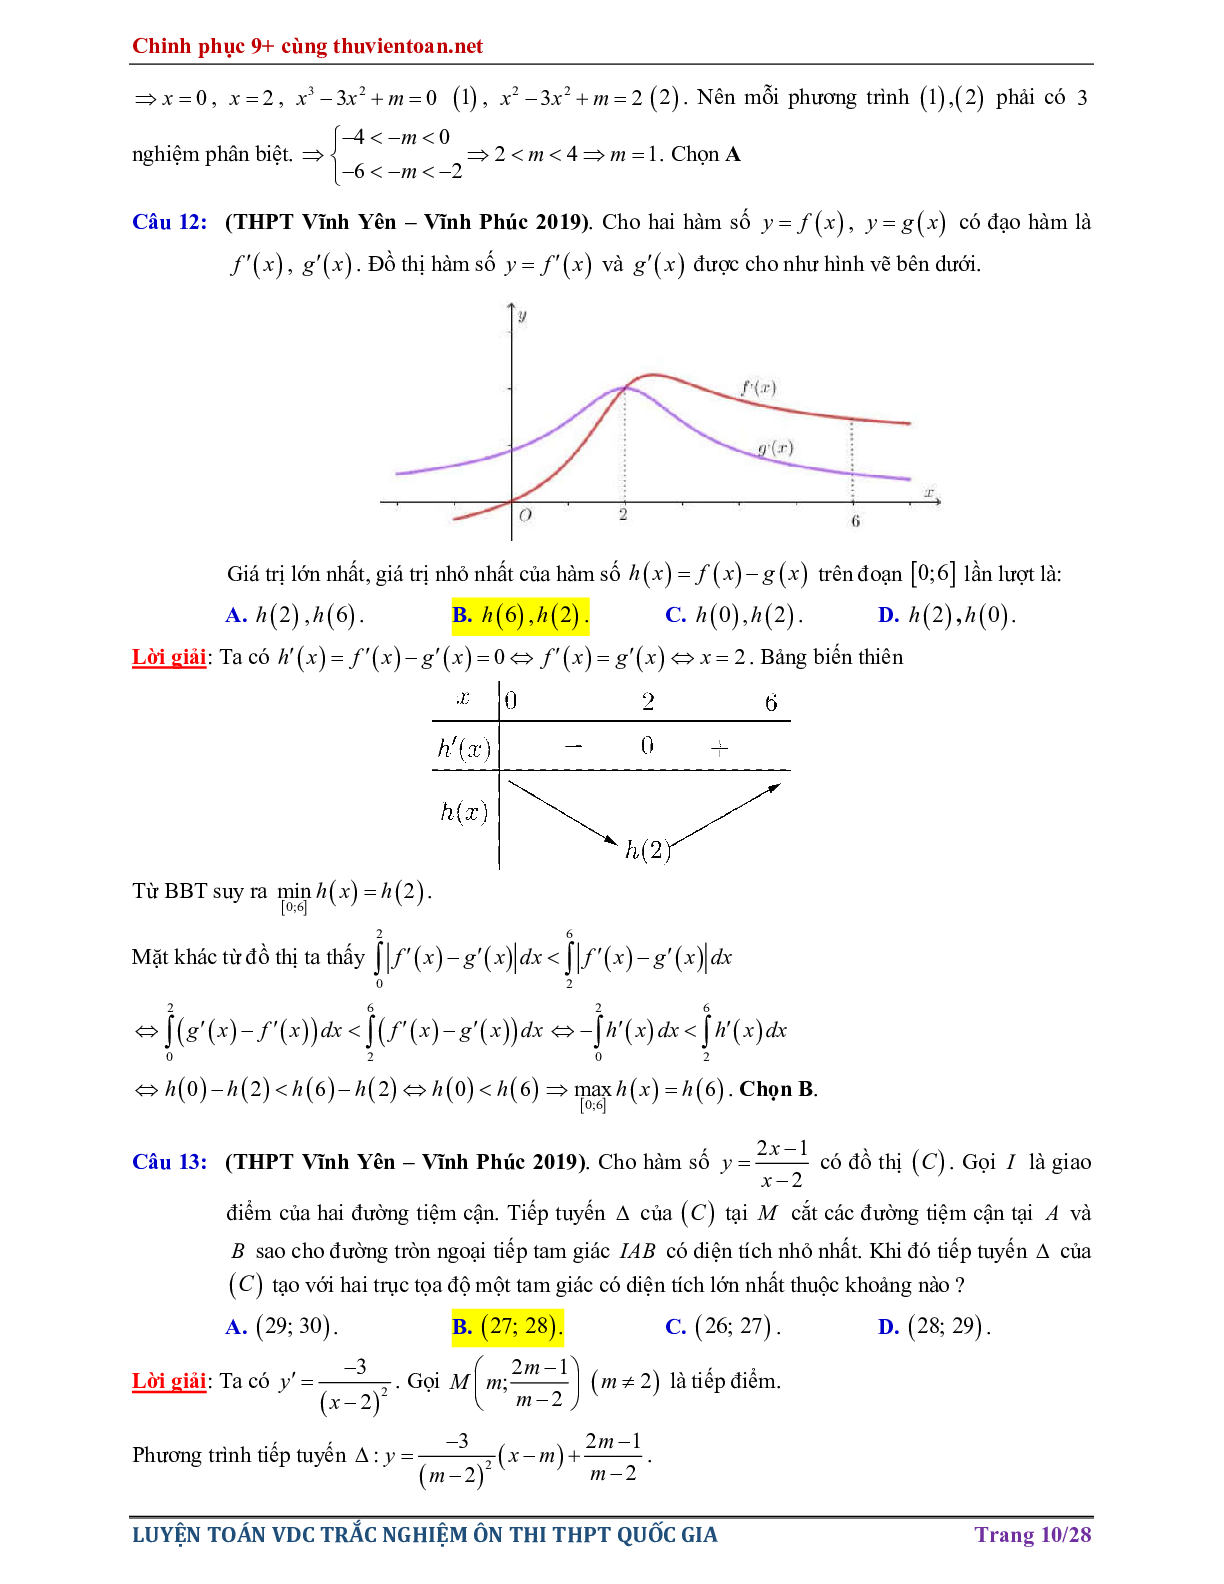 Bài tập Vận dụng cao - Nghiệm của phương trình hàm hợp ôn thi THPTQG năm 2021 (trang 10)